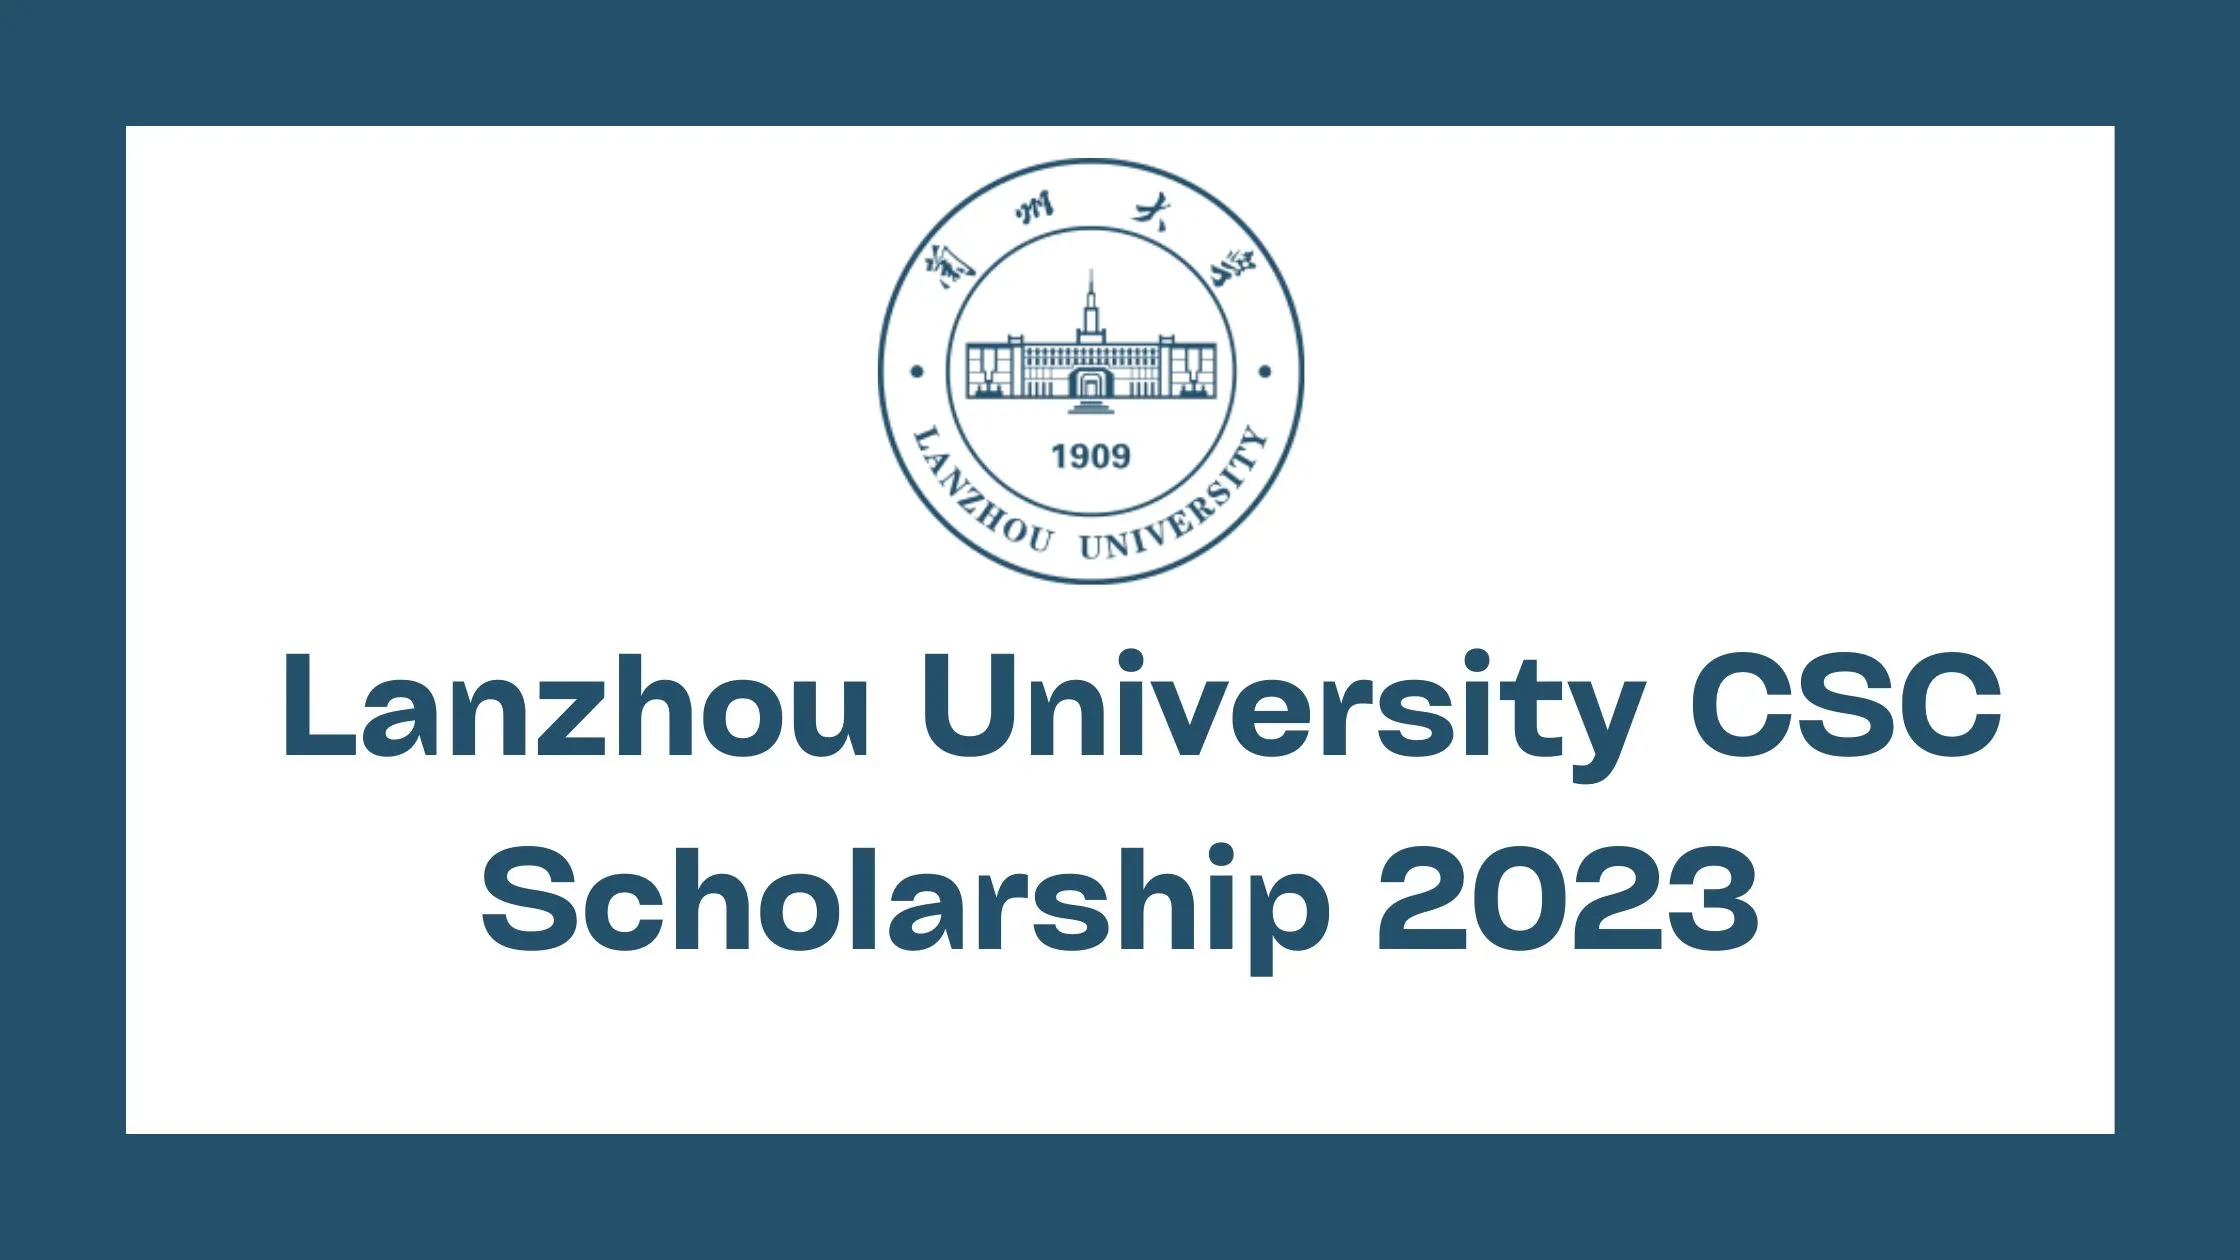 Lanzhou University CSC Scholarship 2023 (Fully Funded)